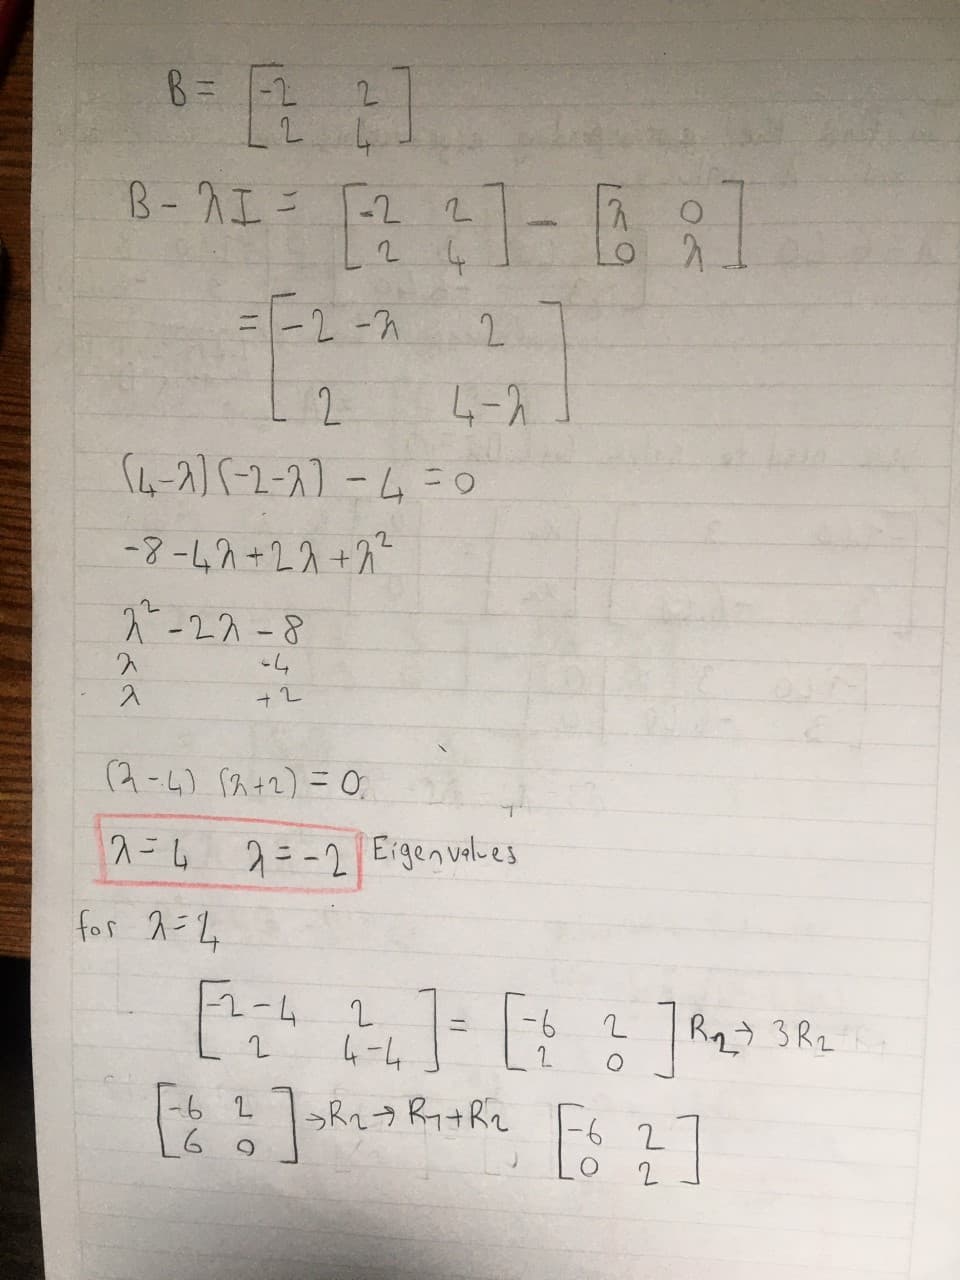 B= -2
2.
B- Iニ 「-22
2 4
-2-7
2.
11
2
4-2
ムース2-ス こ
-8-47+22+7"
し
2-27-8
し
入
(2-4) S2+2) =0,
ス=ム =-2Eigenvalbes
for 2=2
ユーム
4-4
-6
R2) 3 Rz :
ニ
T-6 2
っRa→ Ri+Rr
2
